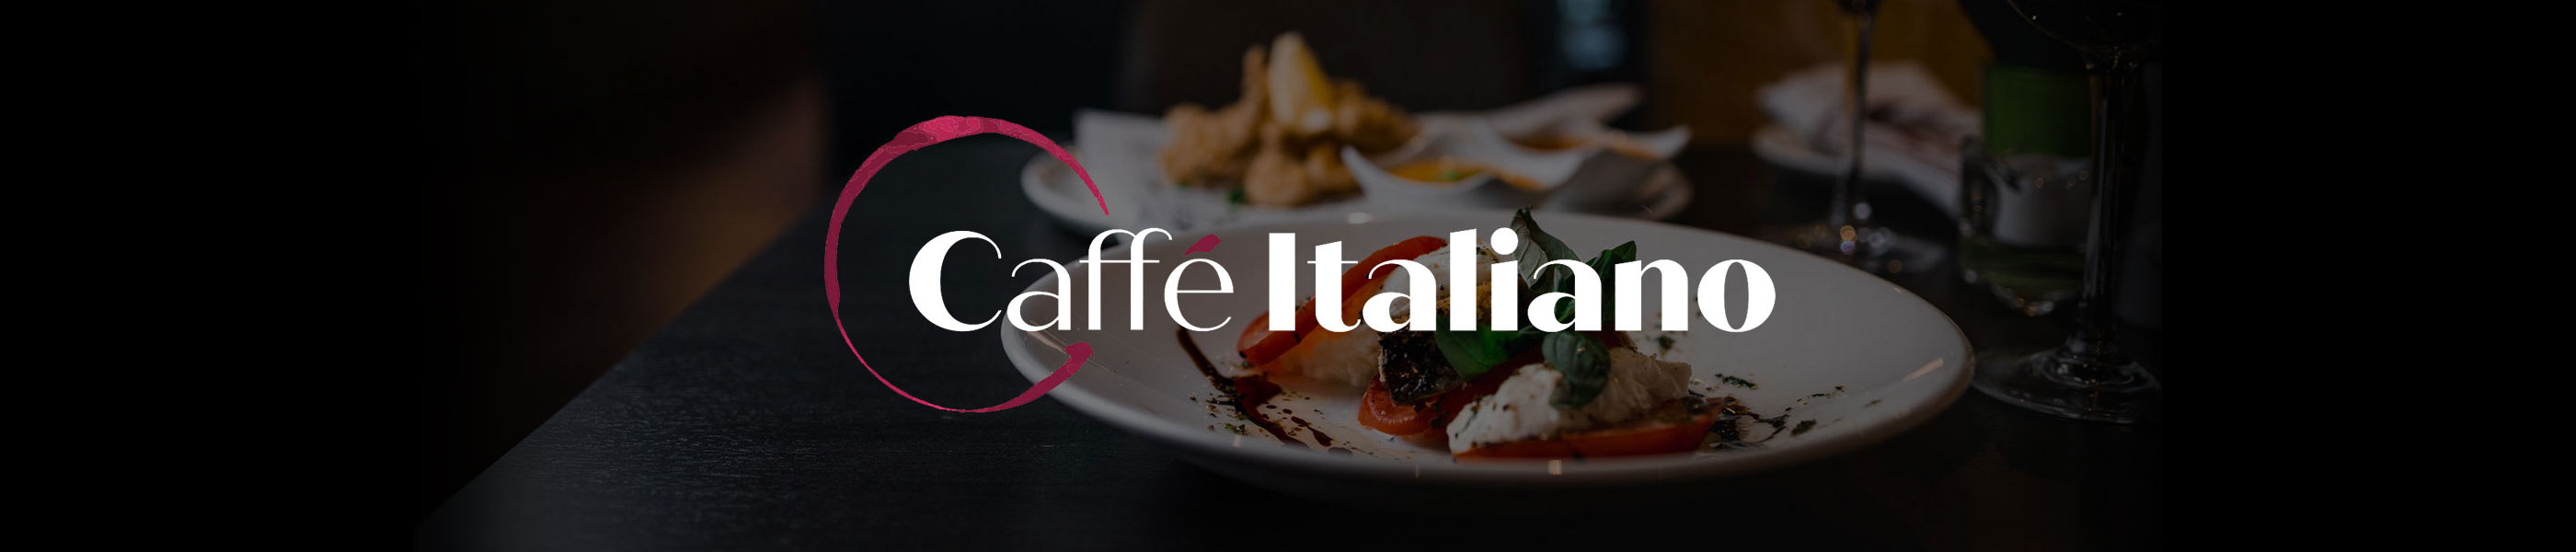 Caffé Italiano logo